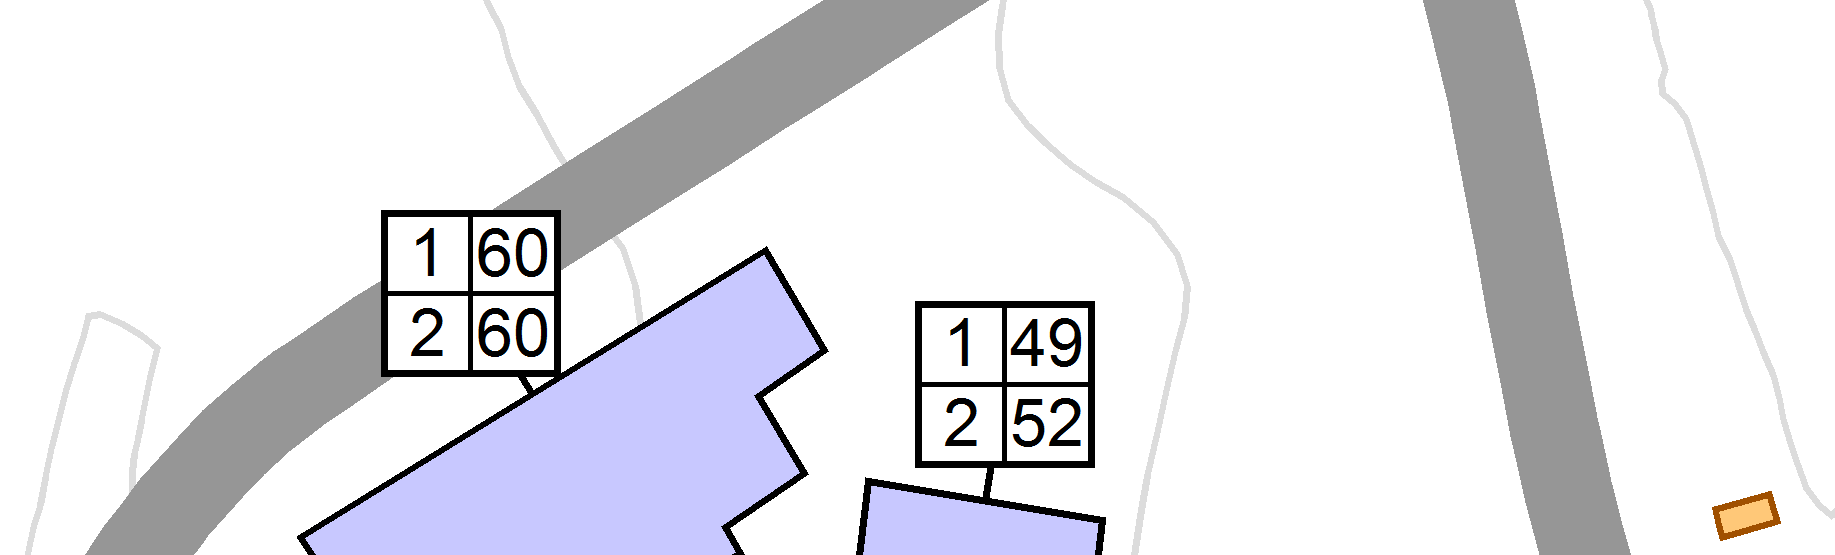 STØYUTREDNING 11 (14) Figur 3 Fasadenivå i Leq24h for Bråten Begby. Beregningshøyde er 2 og 5 m. Trafikktall er for 2033.